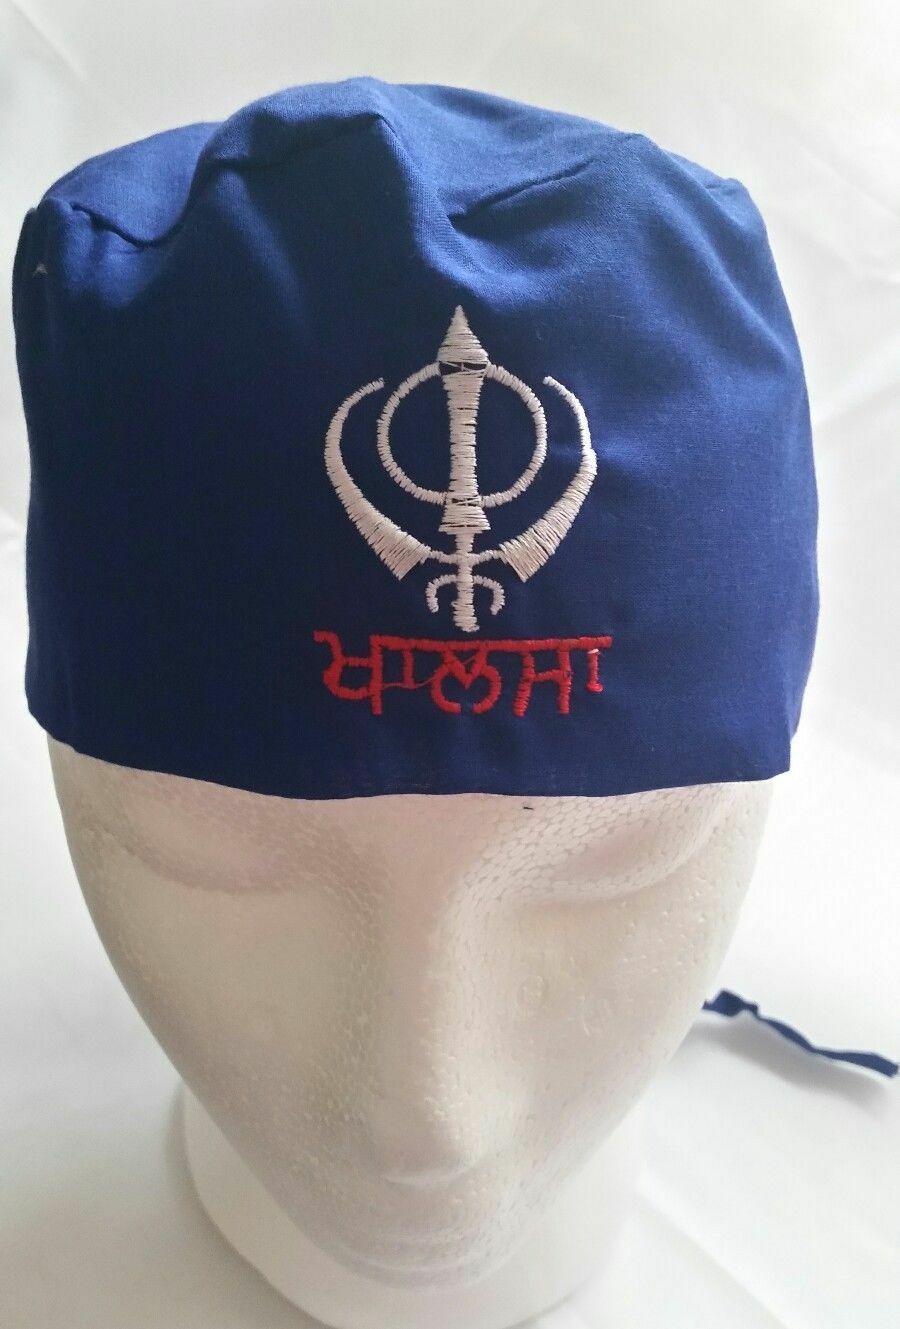 Sikh Punjabi Turban Patka Pathka Singh Khanda Bandana Head Wrap Blue ...